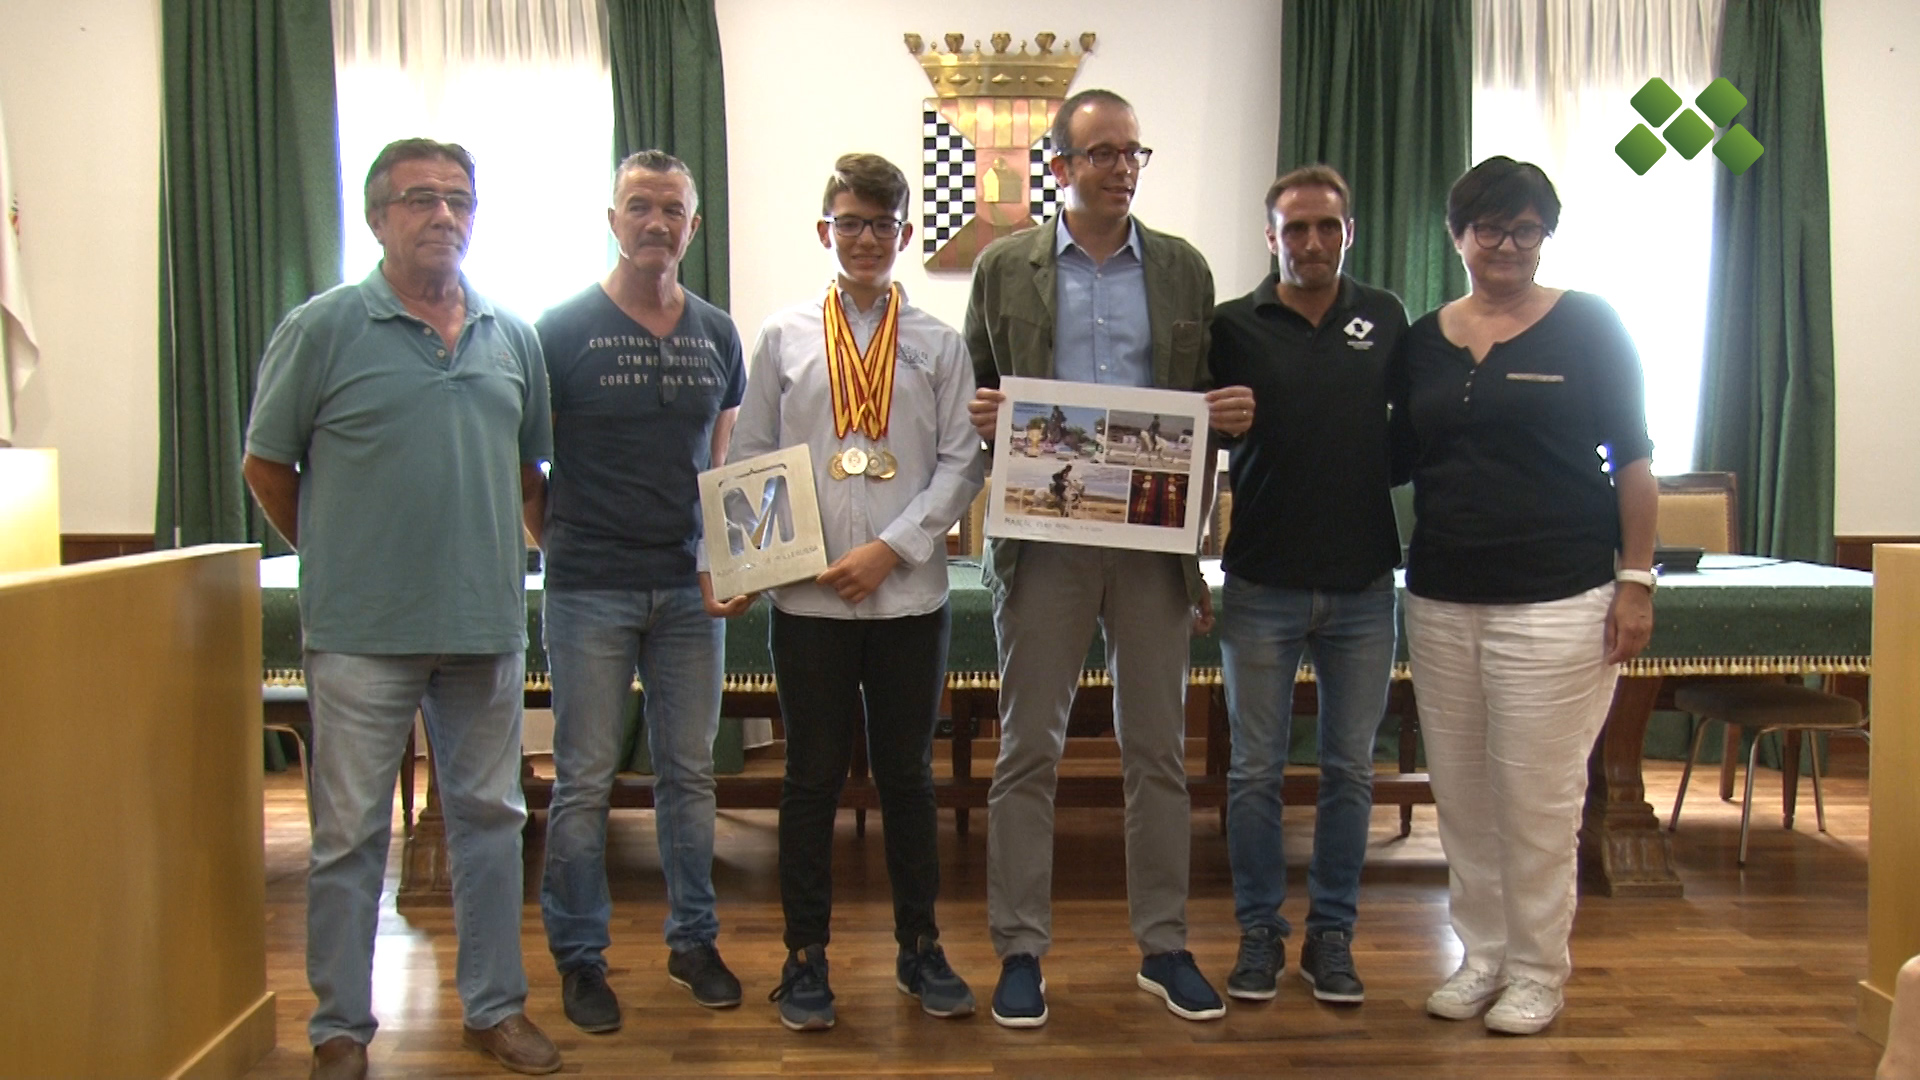 El jove genet Marçal Piró ha estat rebut per l’Ajuntament de Mollerussa i s’ha fet un reconeixement pels premis que ha obtingut al Campionat d’Espanya de Ponis